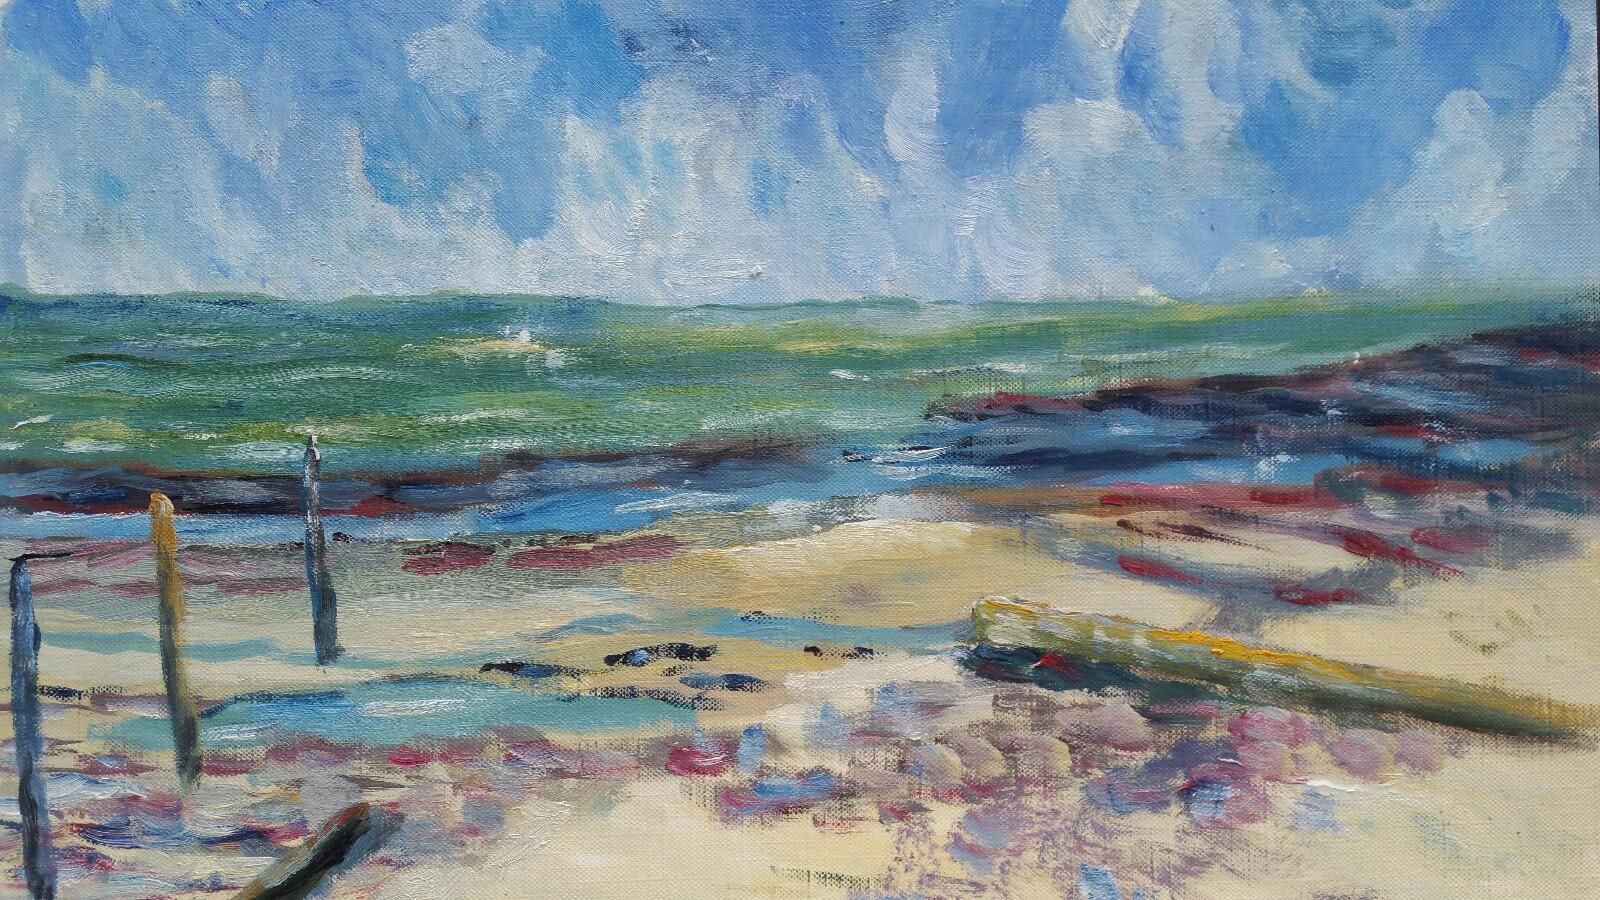 Landscape Painting Unknown - Peinture à l'huile française du 20e siècle représentant une plage dans le sud de la France